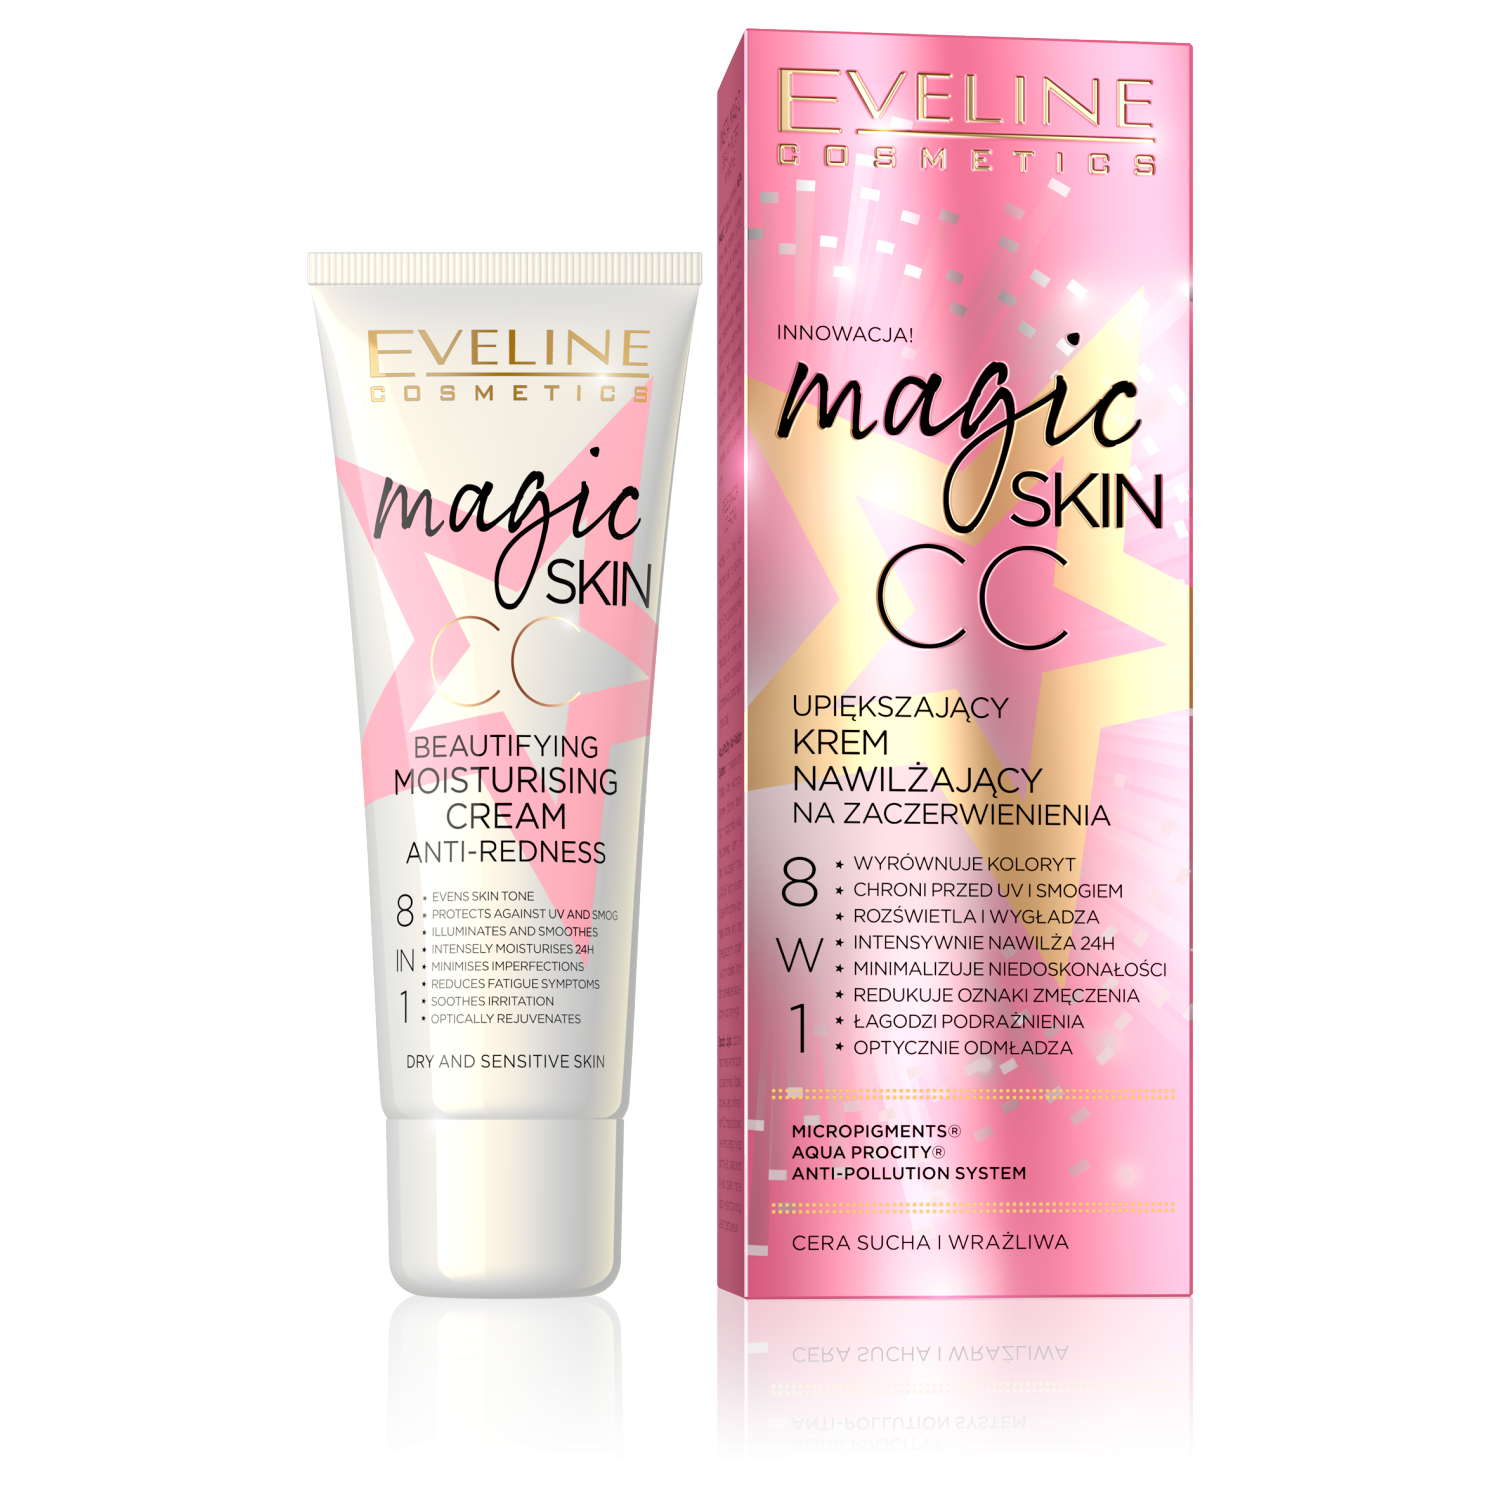 Eveline Cosmetics Magic Skin CC nawilżający krem CC na zaczerwienienia, 50  ml | hebe.pl